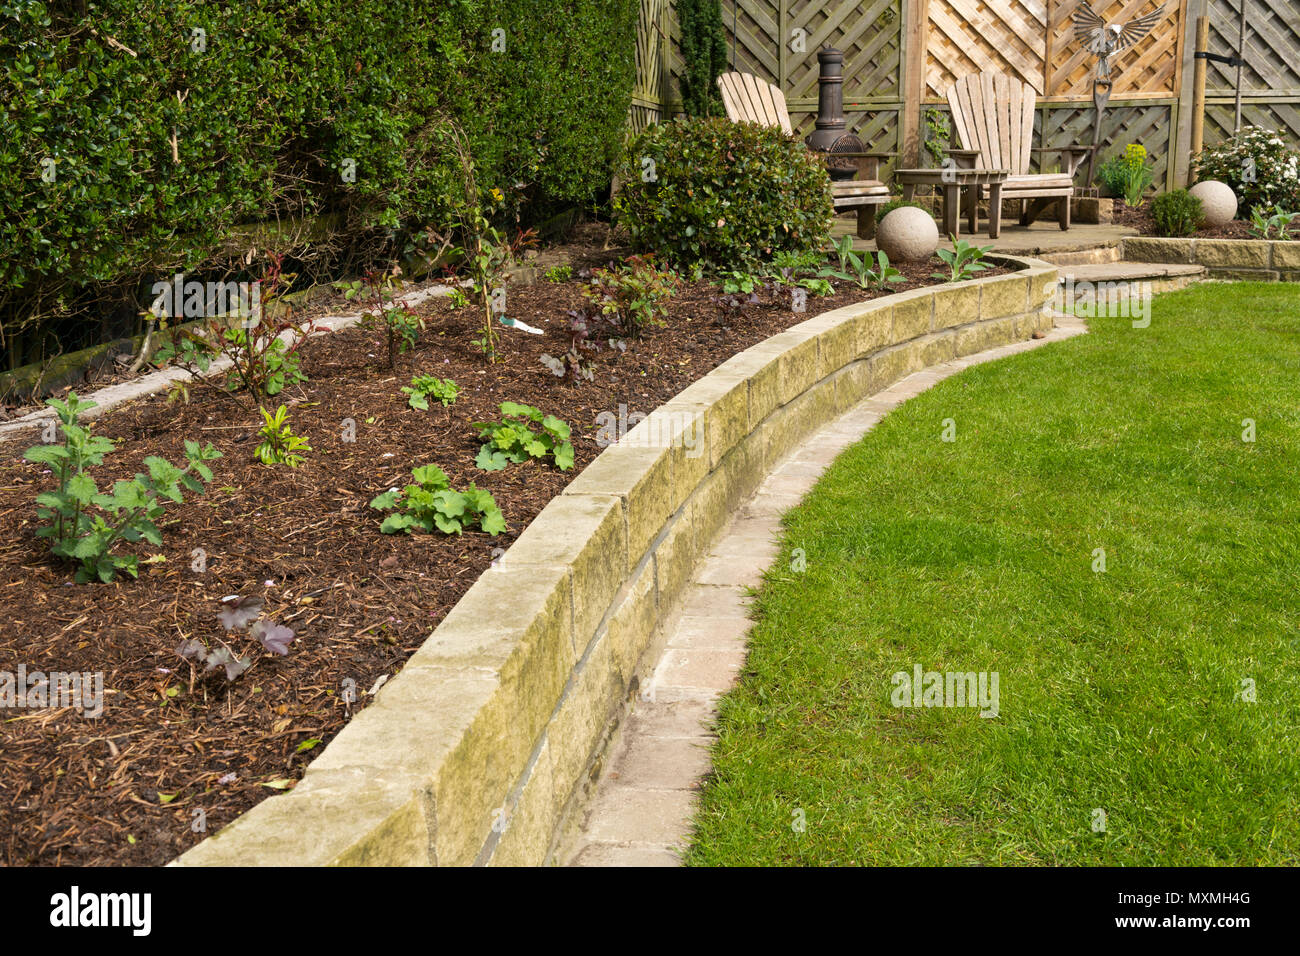 Ecke des schönen, gepflegten, privaten Garten mit zeitgenössischem Design, Pflanzen, Terrasse, Rasen & Ornamente - Yorkshire, England, UK. Stockfoto